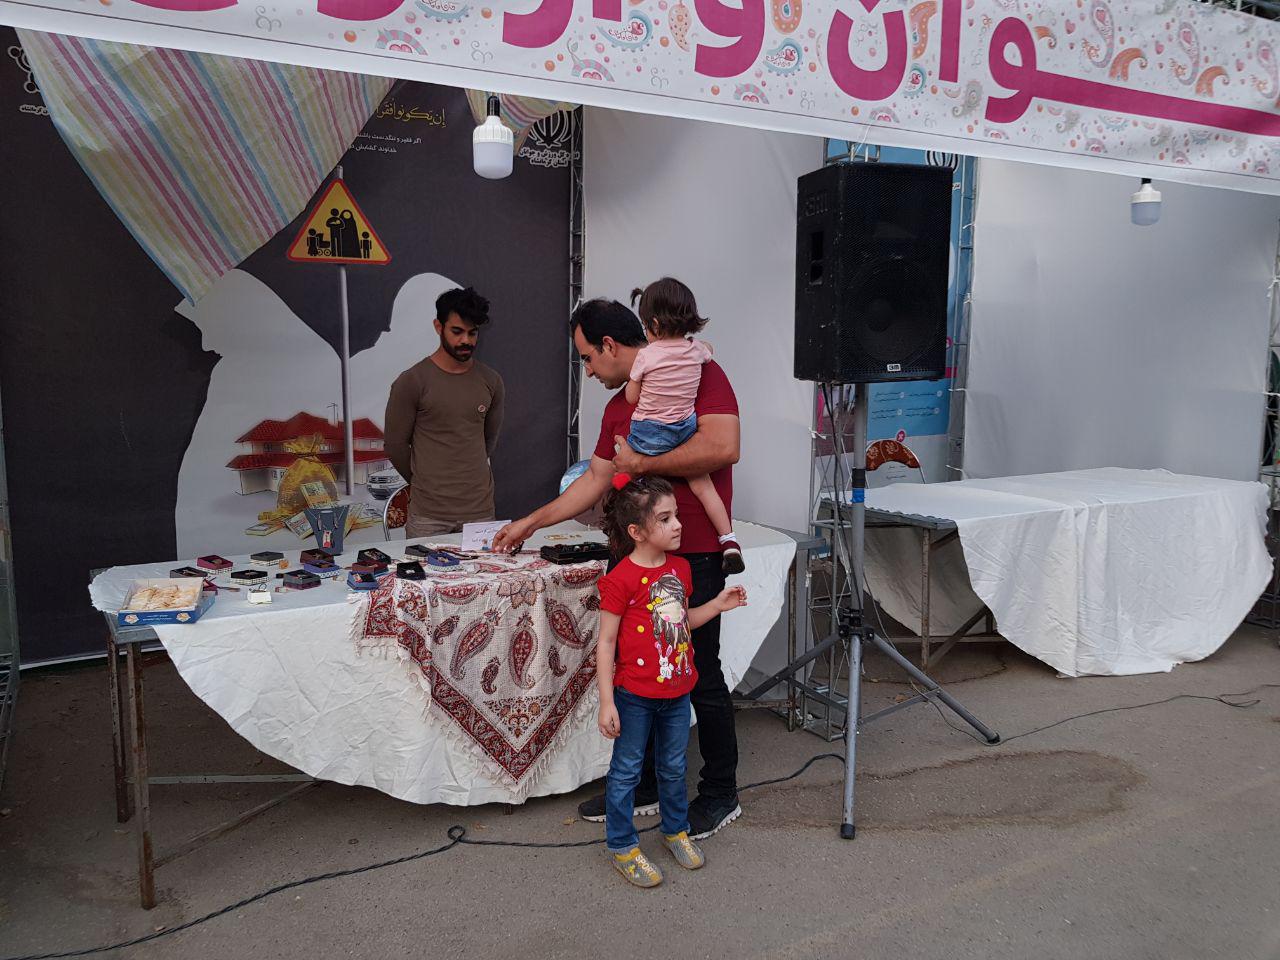 اسم عکاس ندارد -  نمایشگاه جوان و ازدواج آسان در پارک معلم کرمانشاه